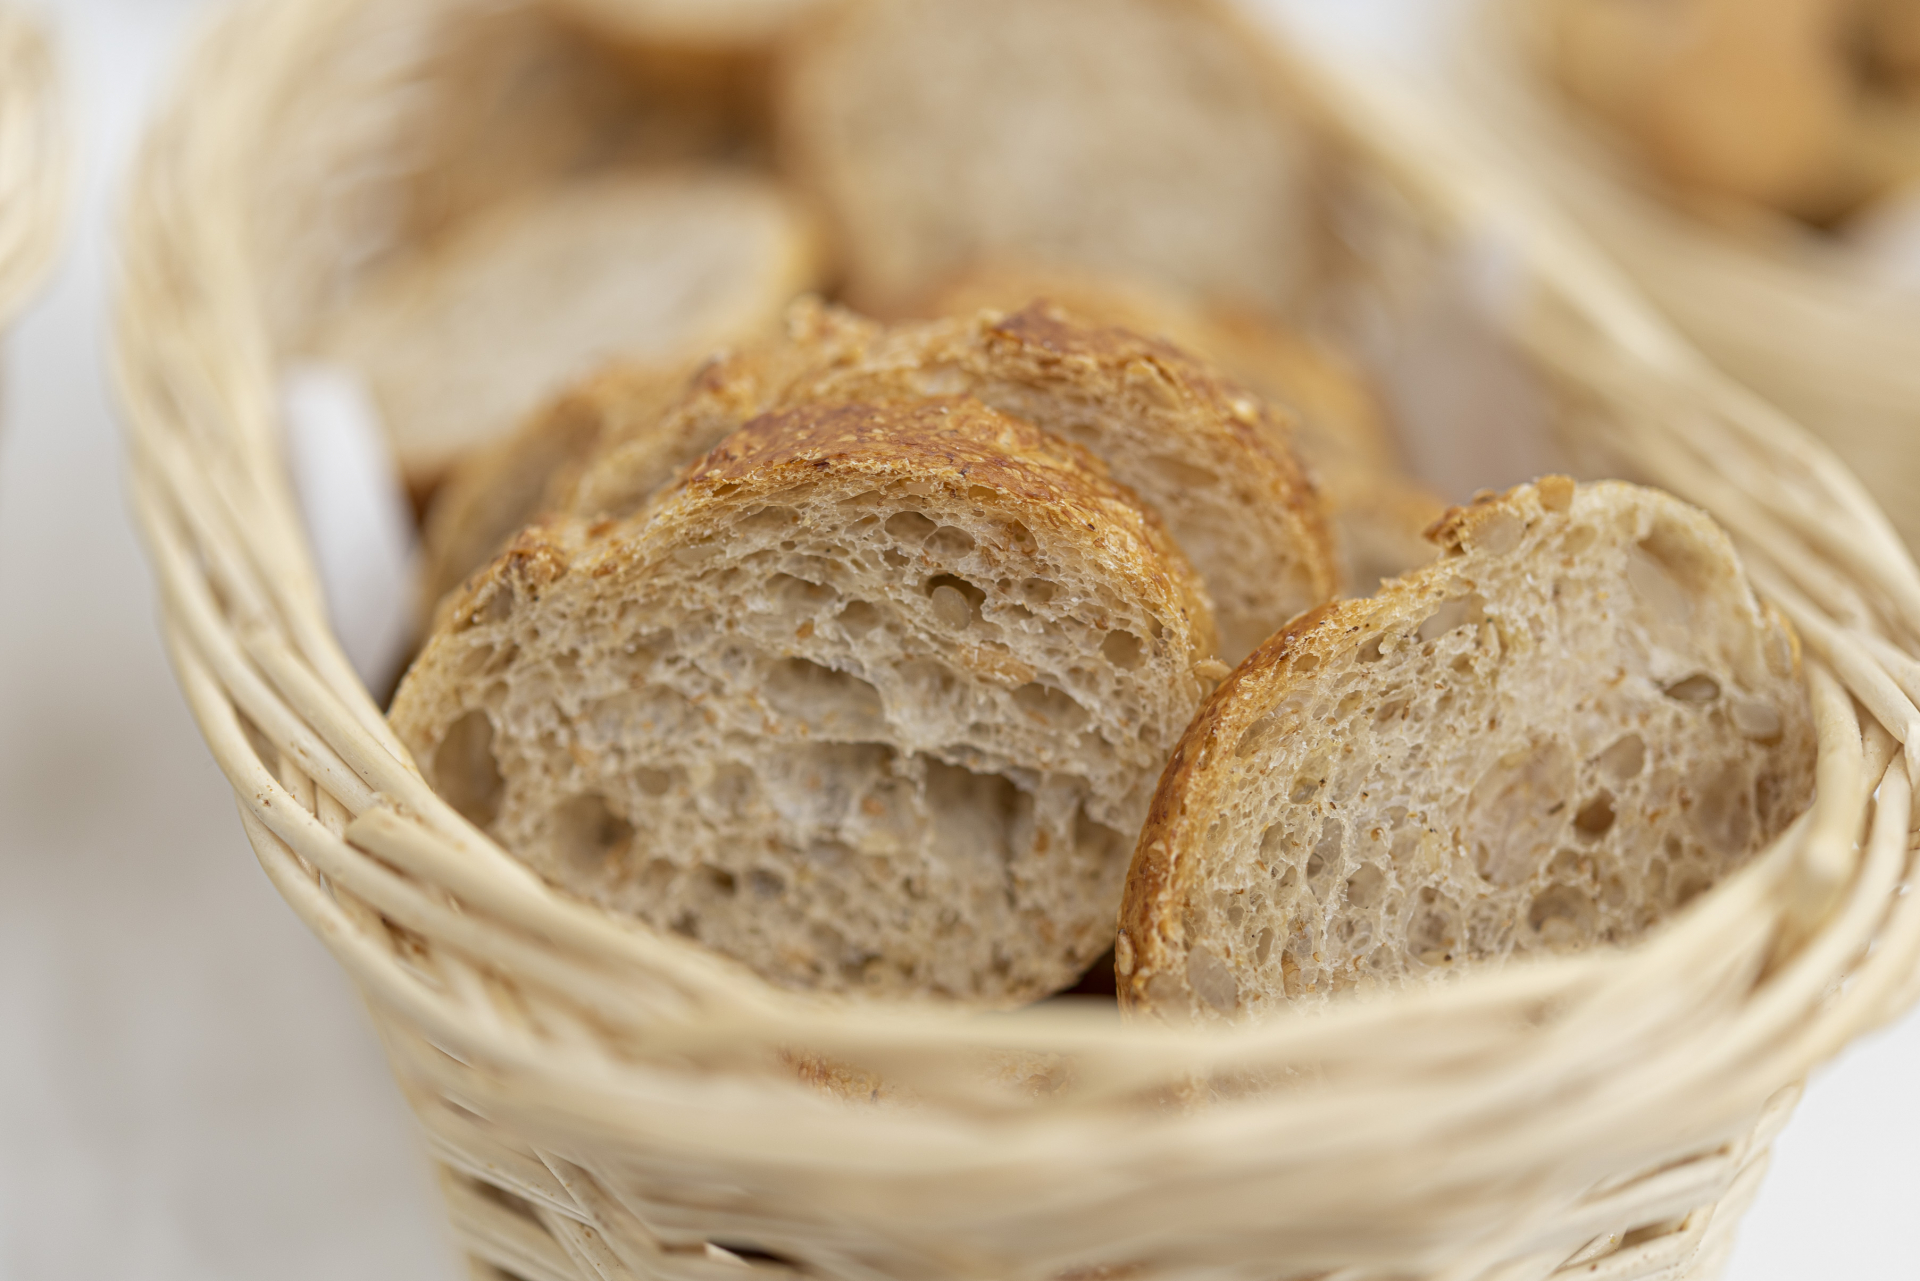 Nessun dubbio, il pane è una certezza della nostra quotidianità